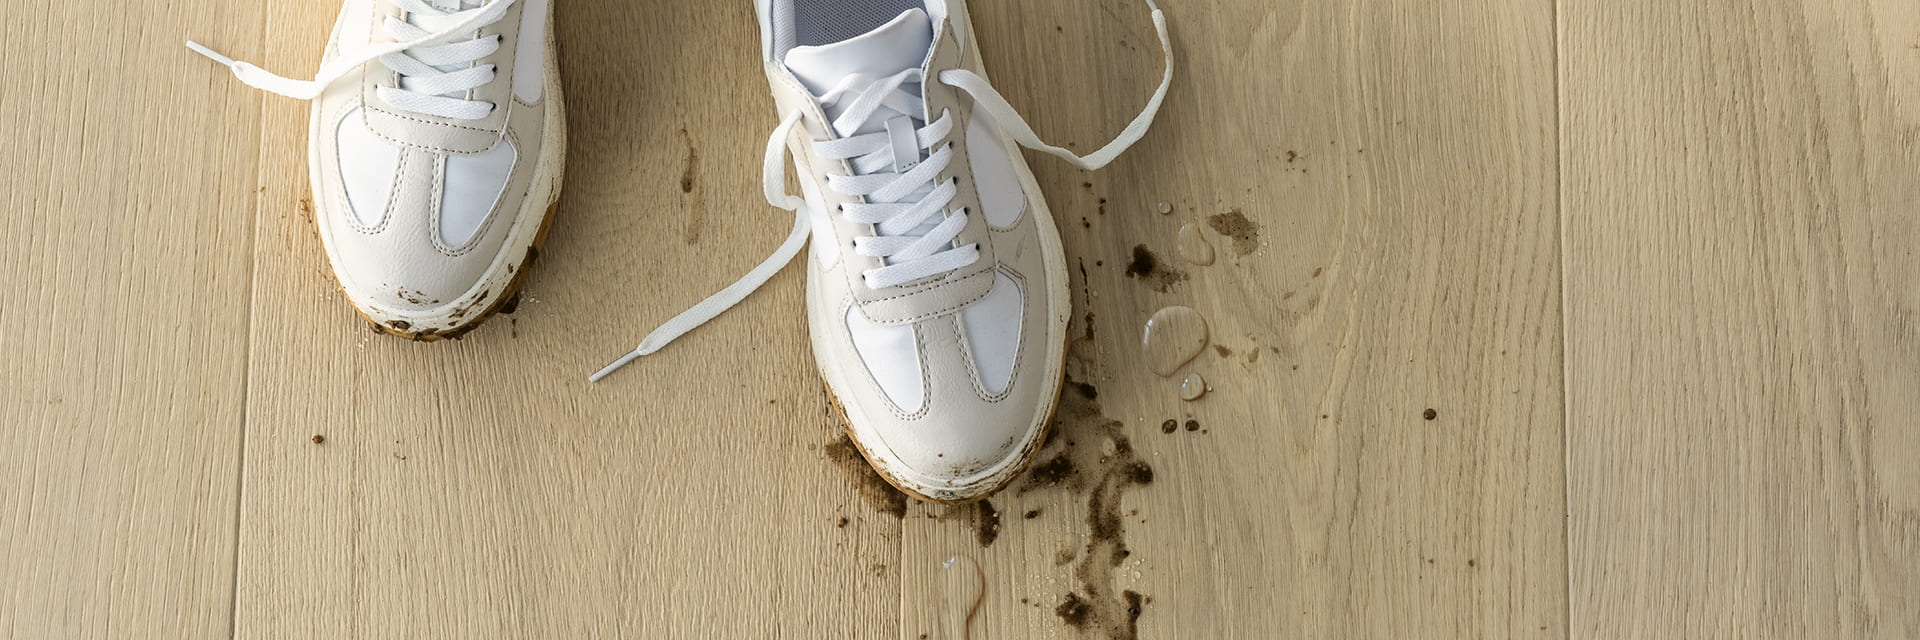 close-up van vuile schoenen met gemorste modder en water op een beige houten vloer